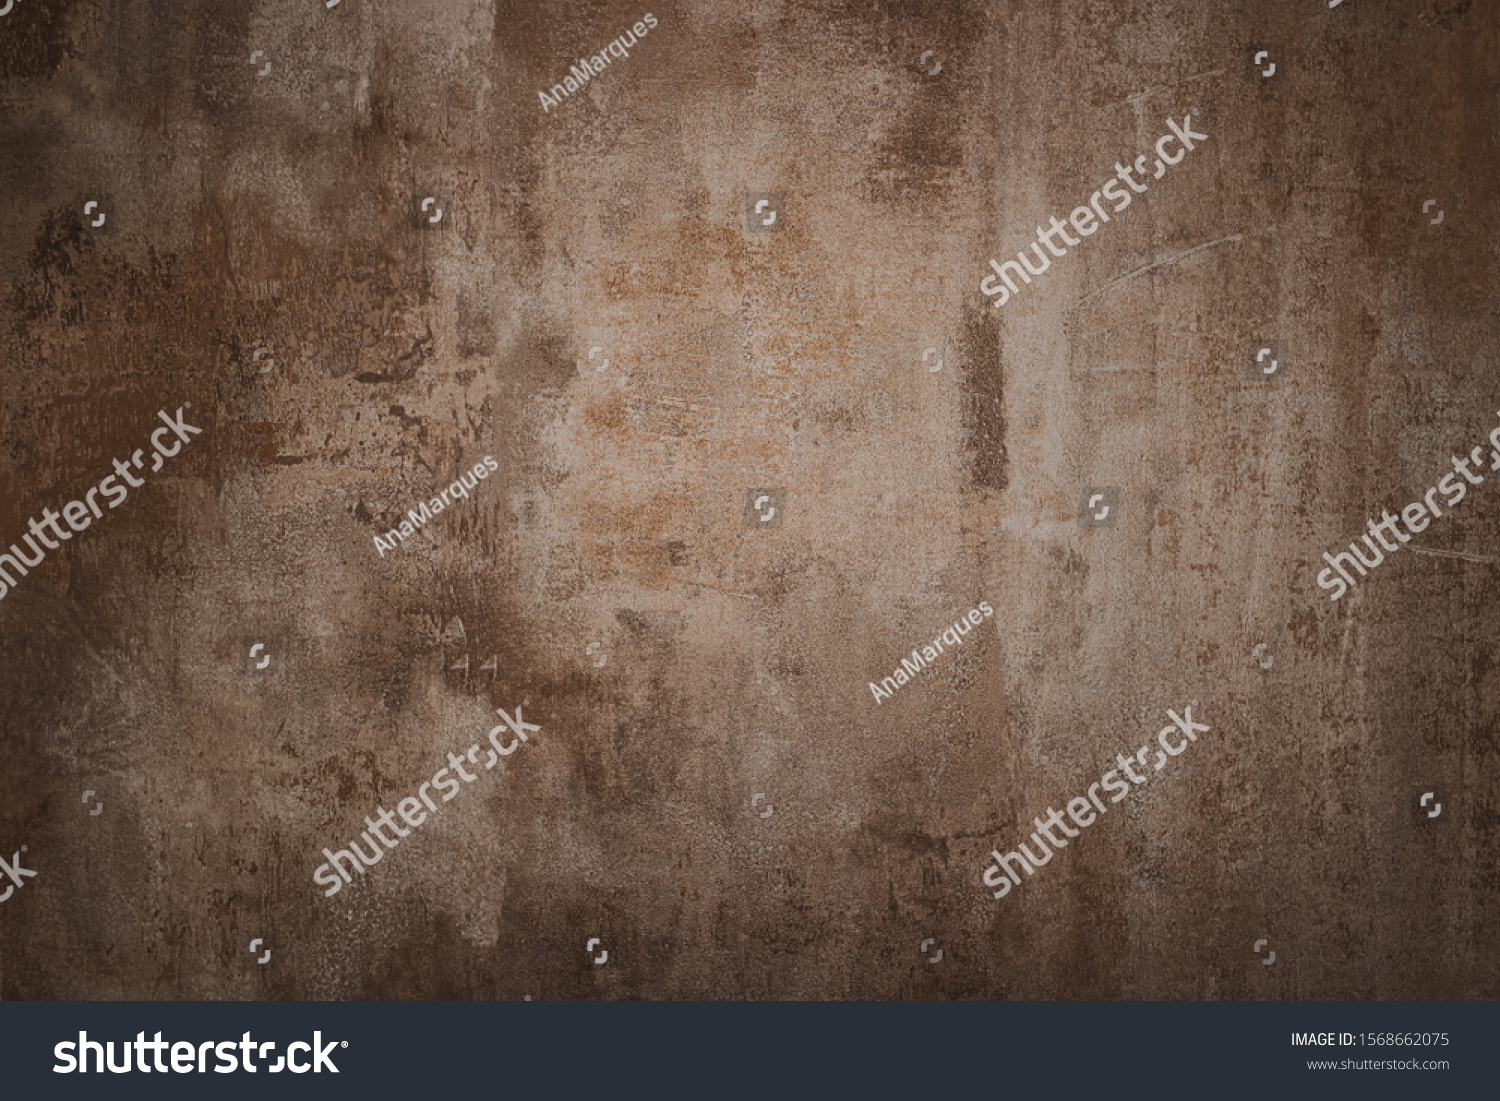 Metal rusty texture background rust steel. Industrial metal texture. Grunge rusted metal texture, rust background #1568662075